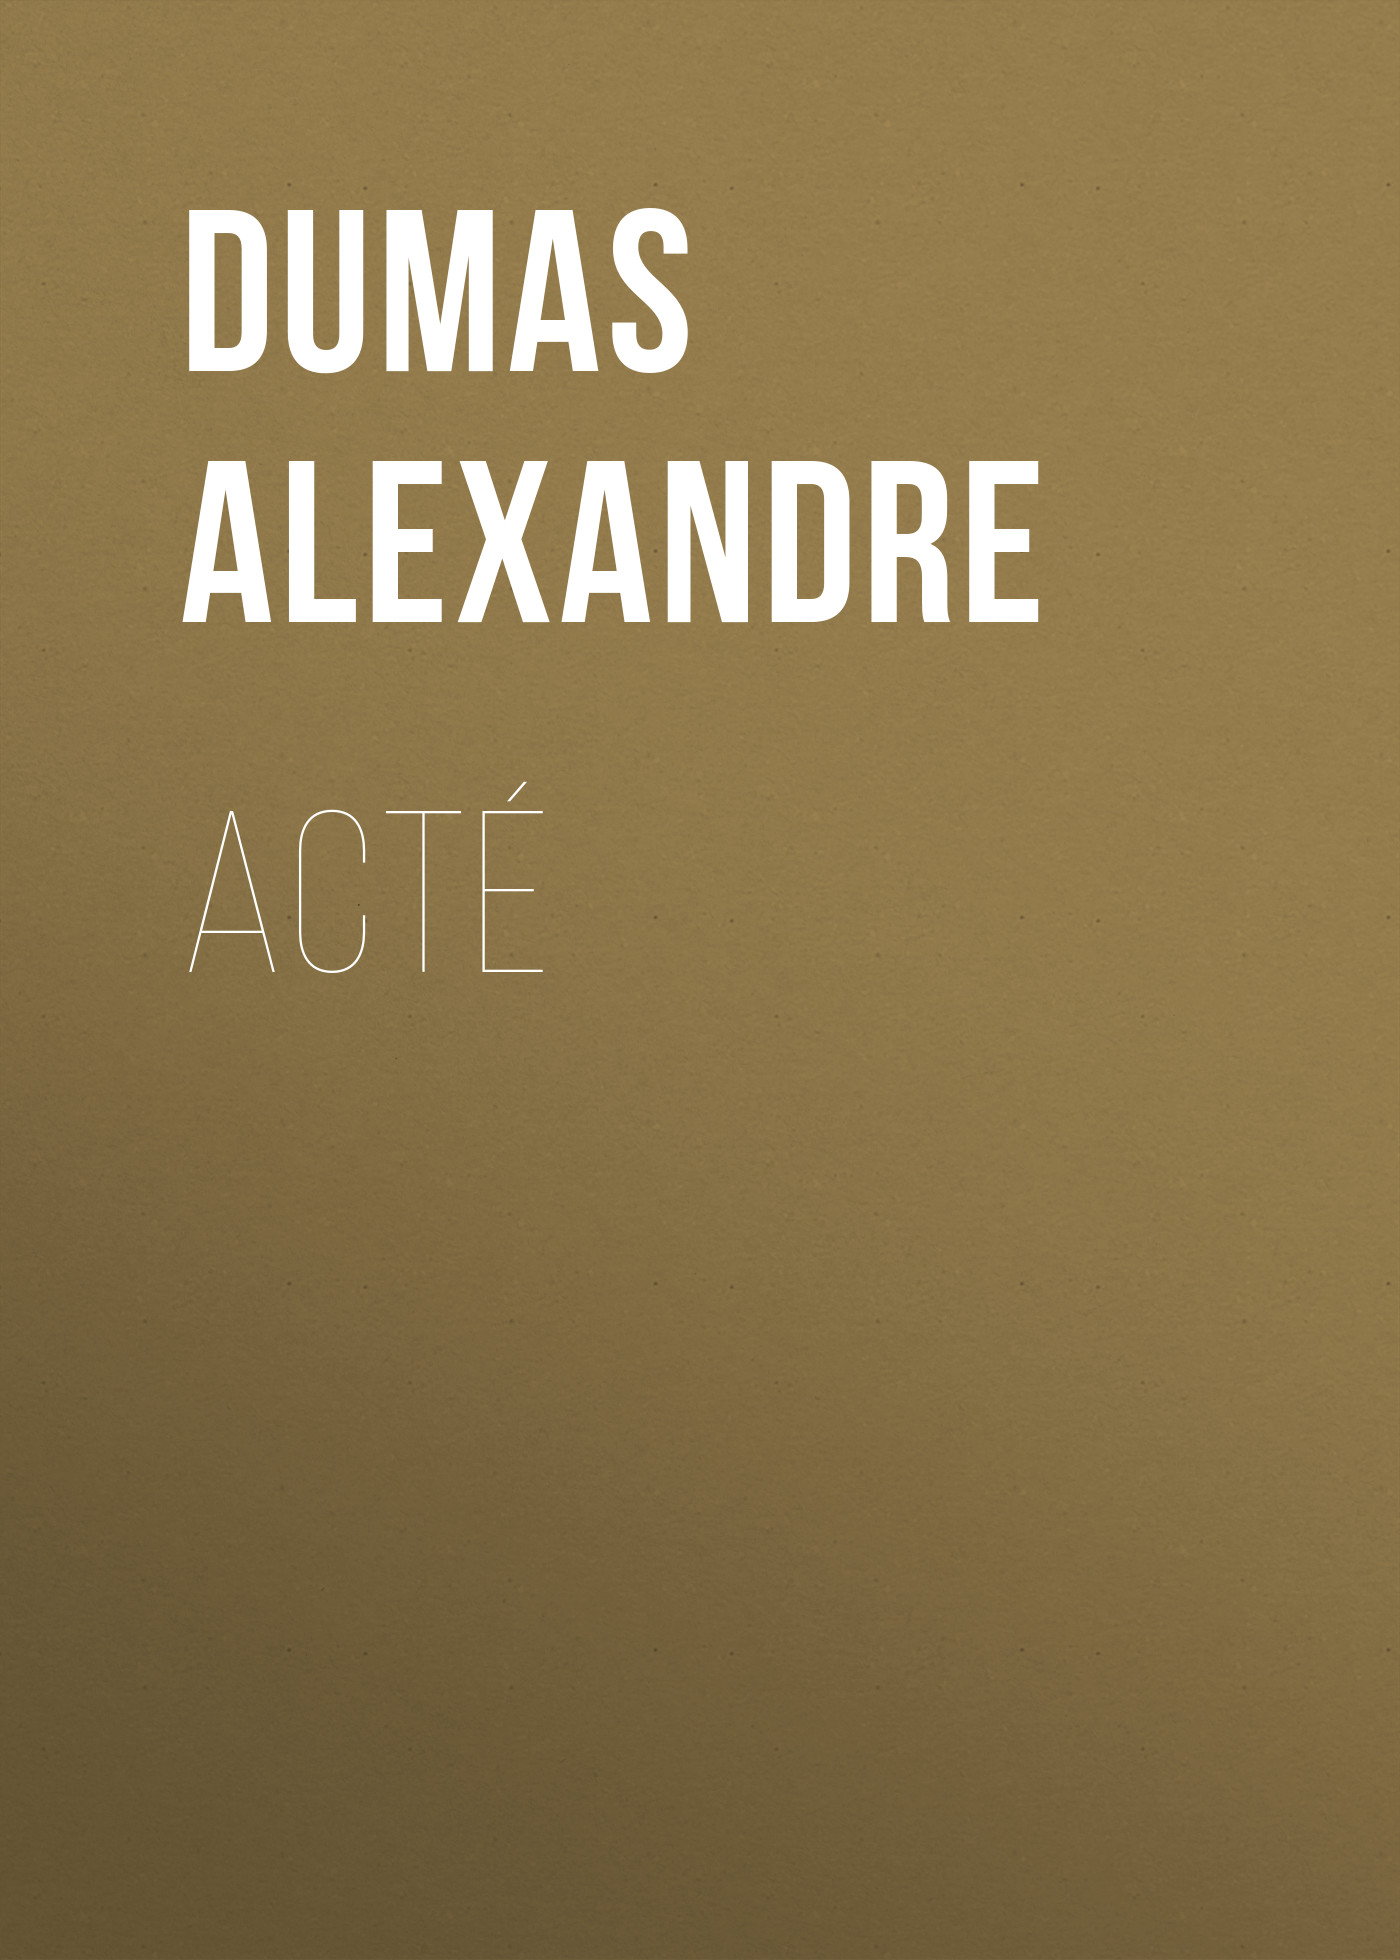 Книга Acté из серии , созданная Alexandre Dumas, может относится к жанру Литература 19 века, Зарубежная старинная литература, Зарубежная классика. Стоимость электронной книги Acté с идентификатором 25202959 составляет 0 руб.